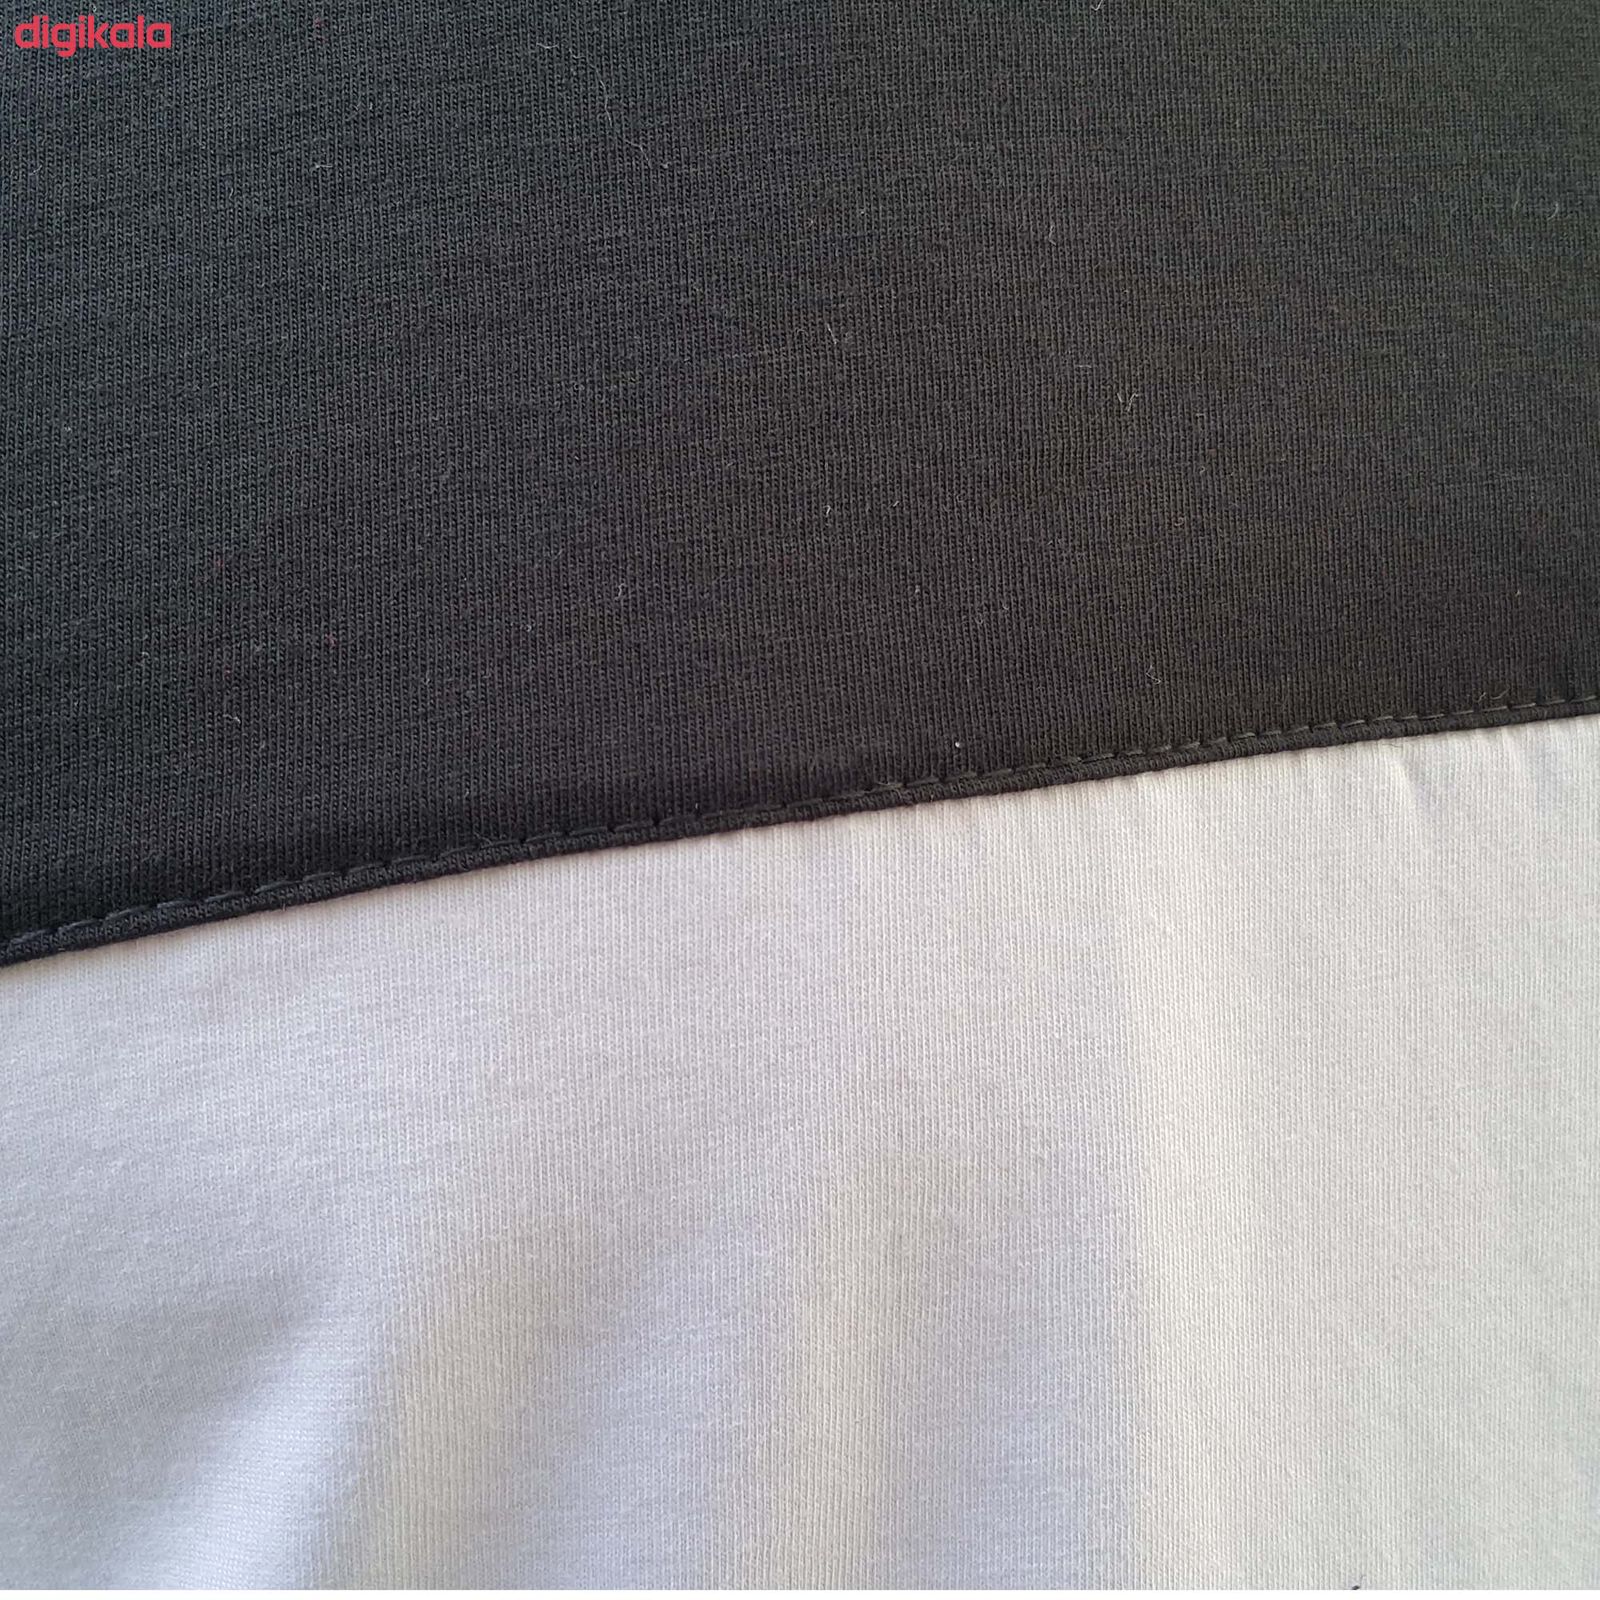  تی شرت آستین کوتاه مردانه طرح آژاکس کد A265Gرنگ سفید